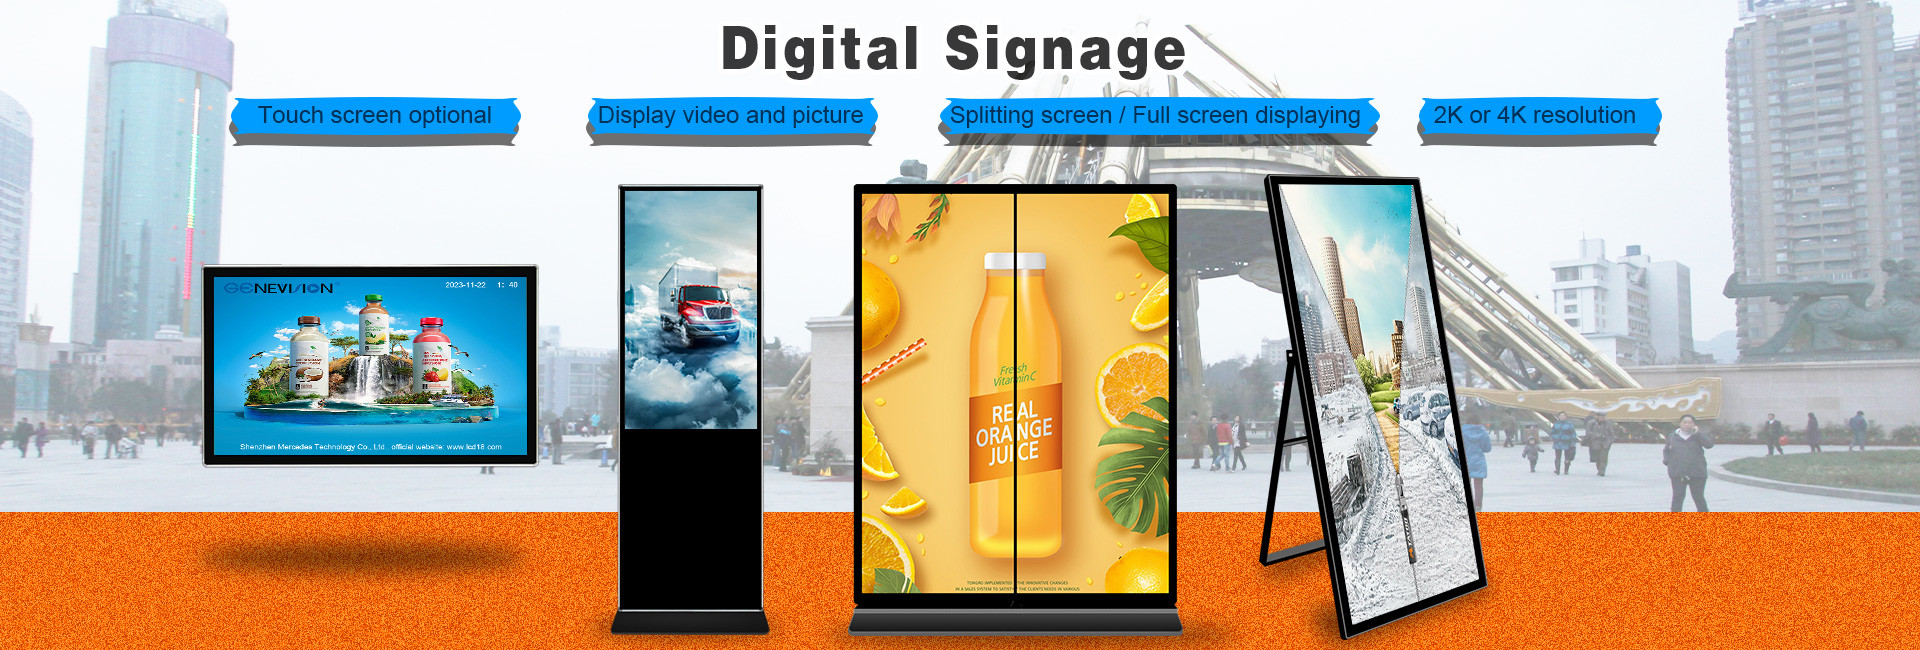 Jakość Wifi Digital Signage fabryka